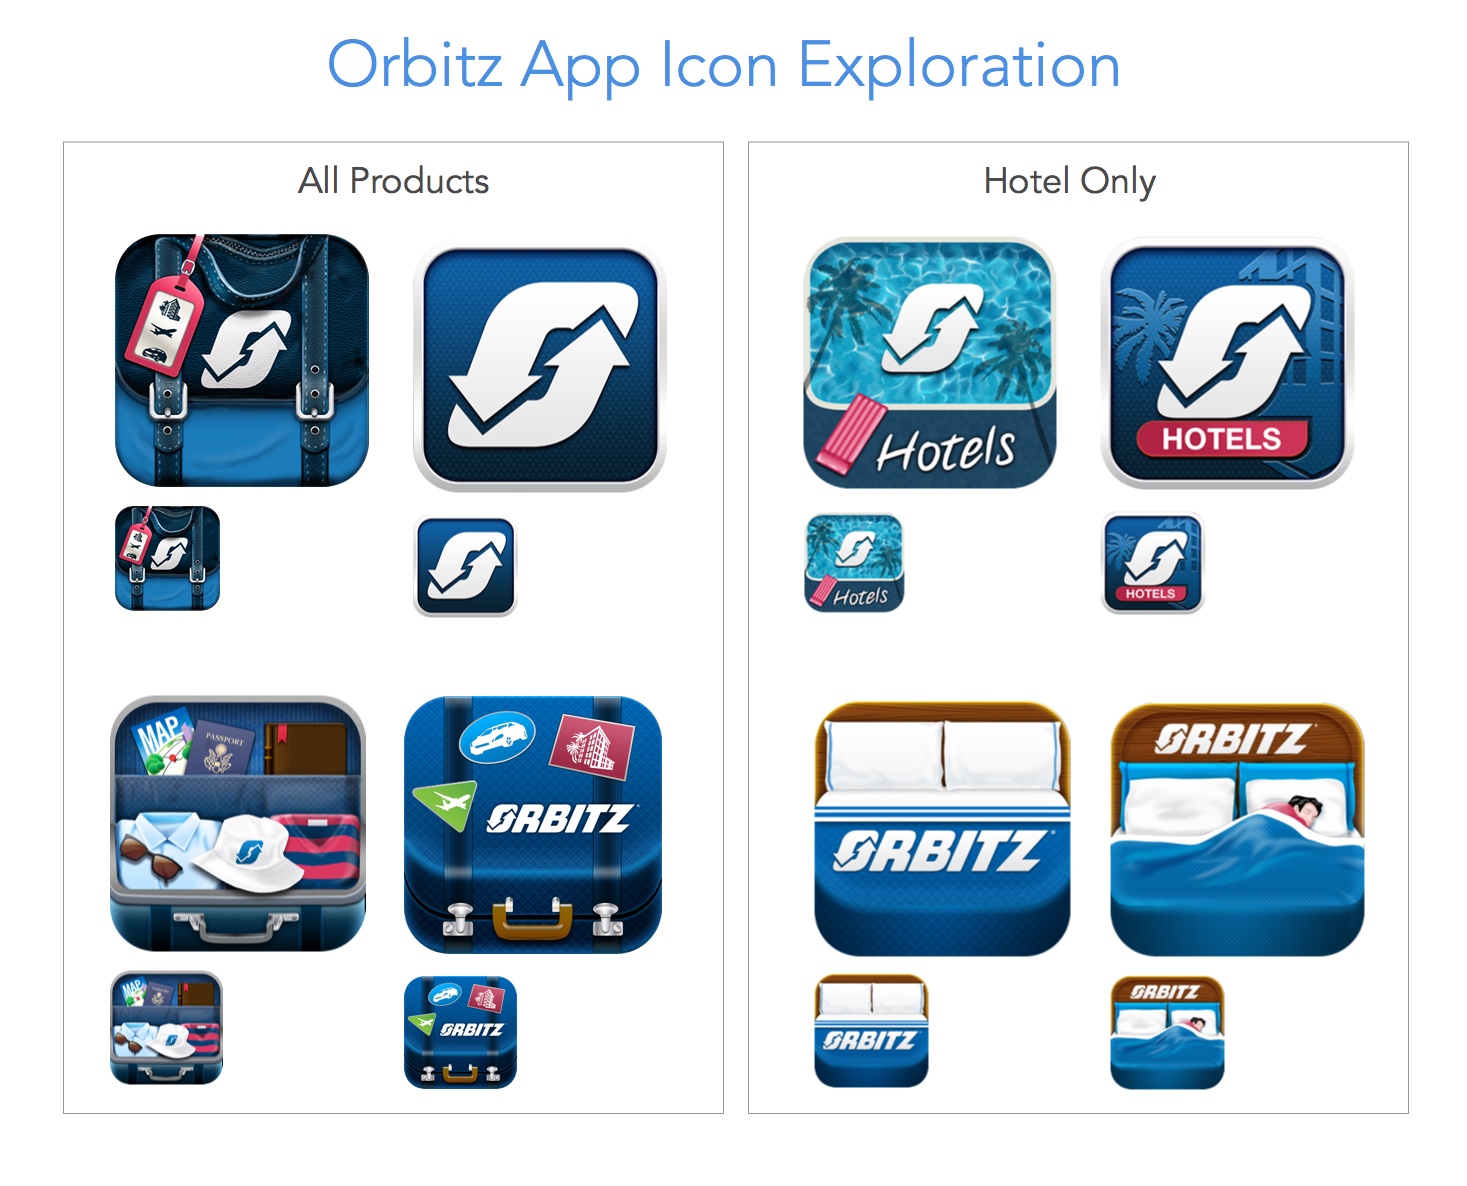 Orbitz App Icon Exploration